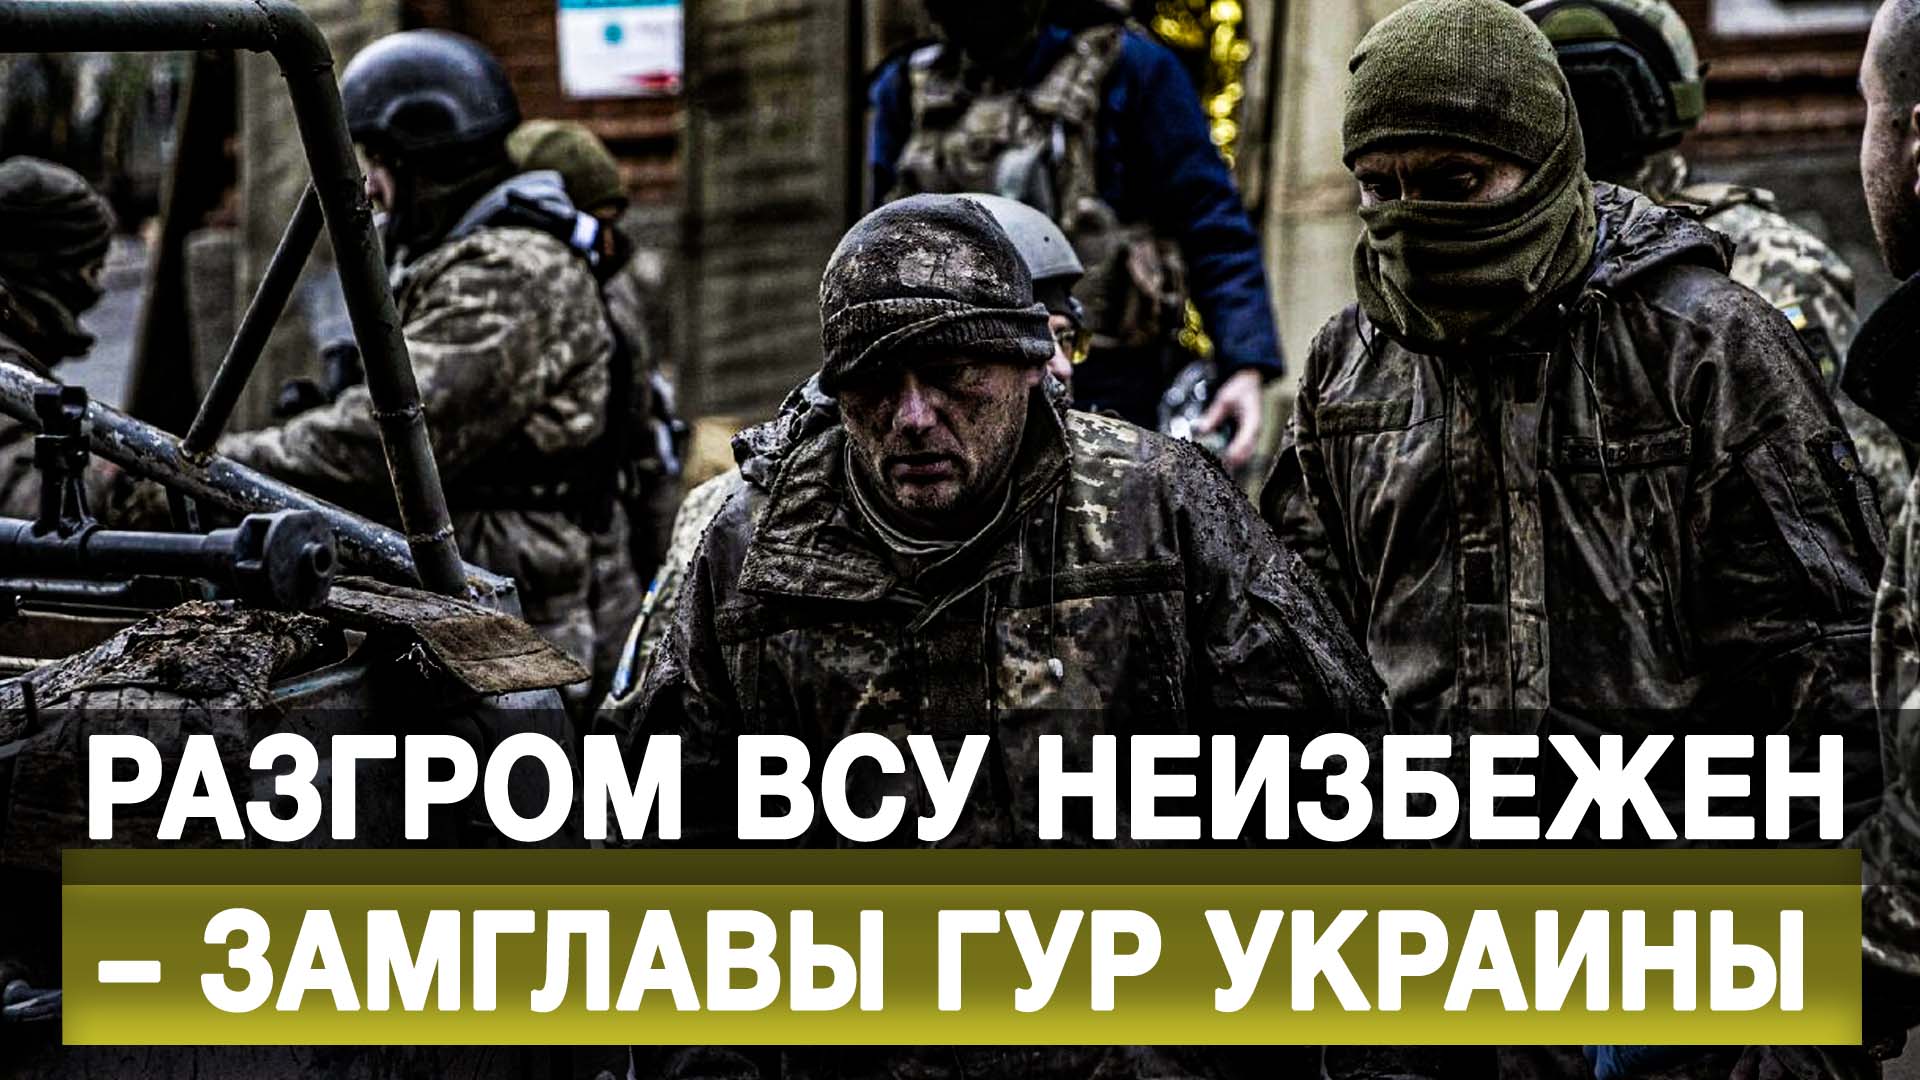 Разгром ВСУ неизбежен – замглавы ГУР Украины